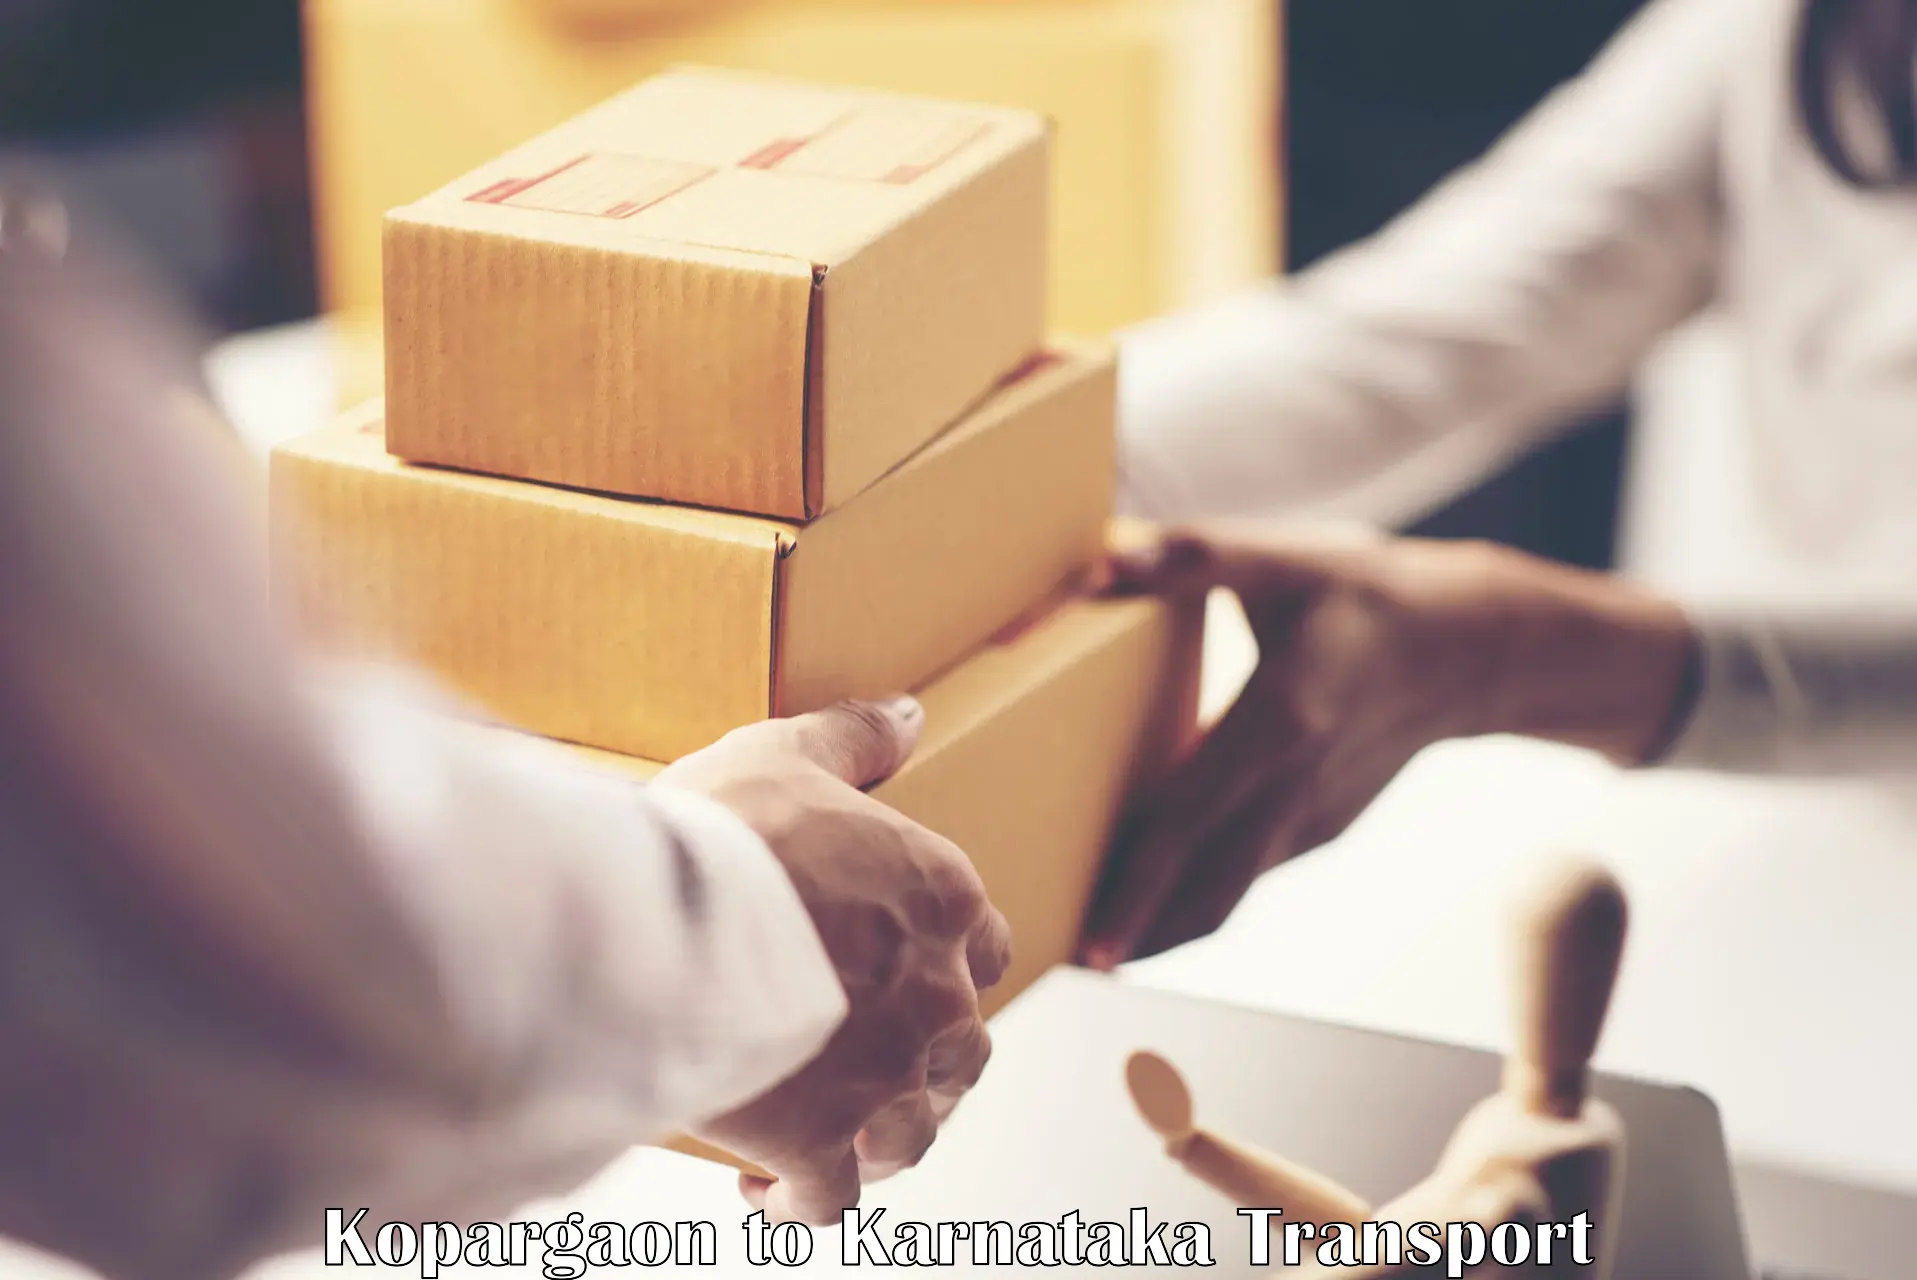 Furniture transport service in Kopargaon to Shimoga